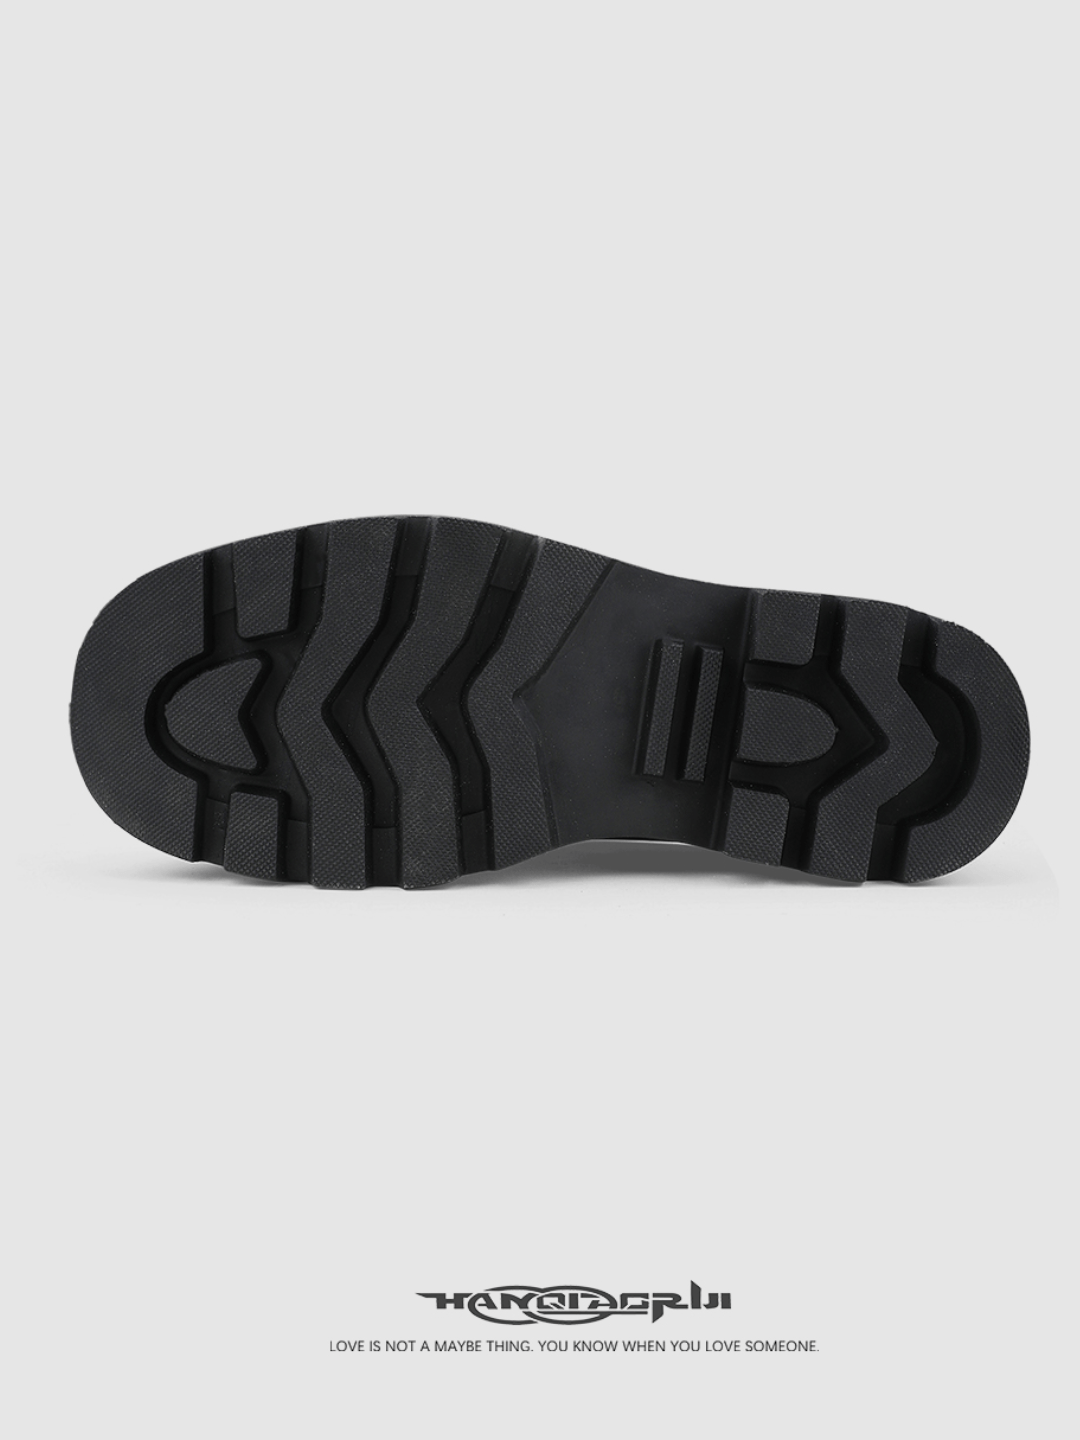 Slippers Derby – NA622 Nanostudio Minority Design Black